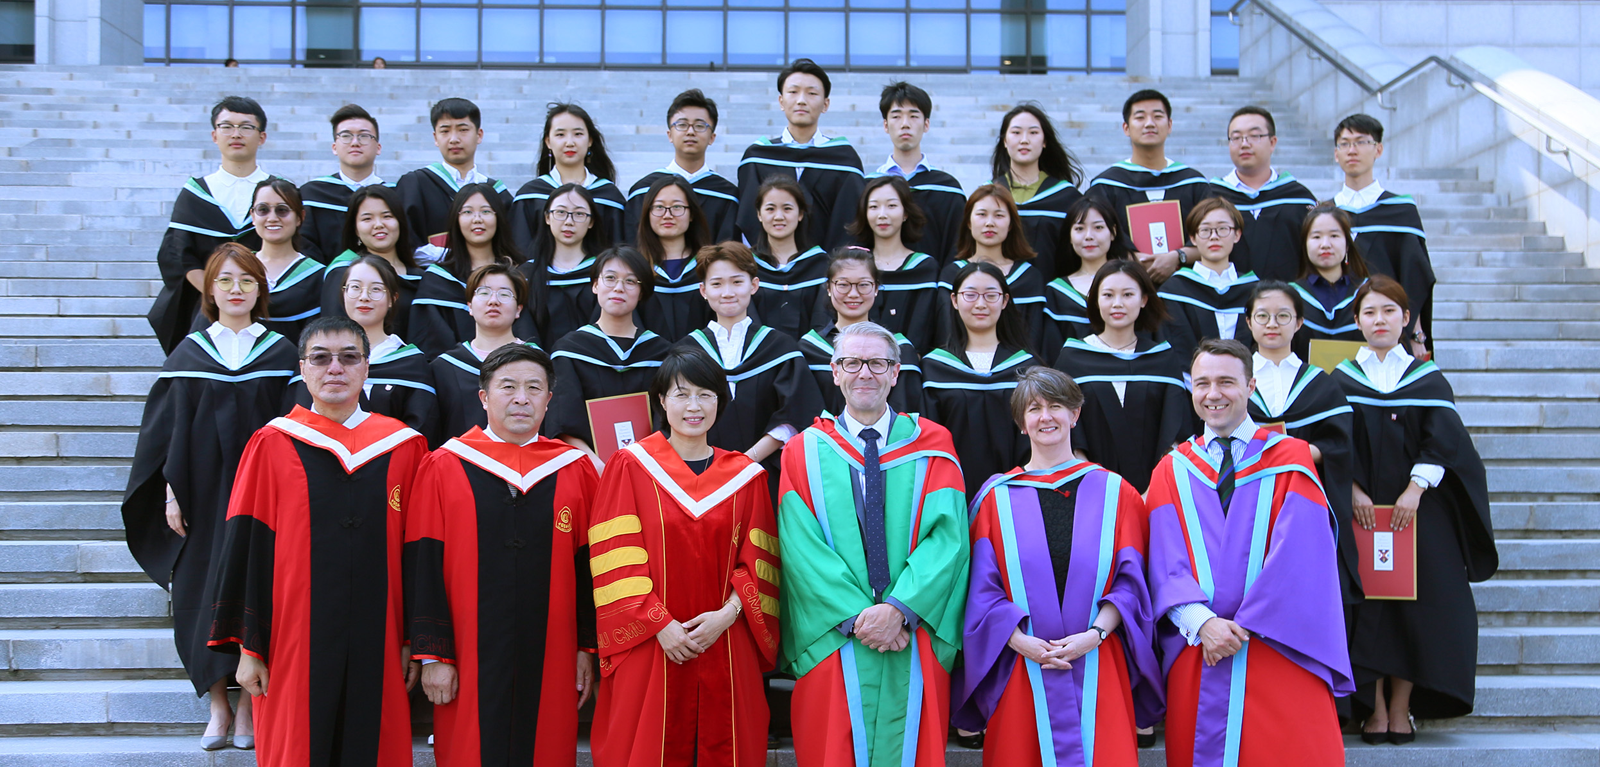 فارغ التحصیلی در کارشناسی ارشد در چین